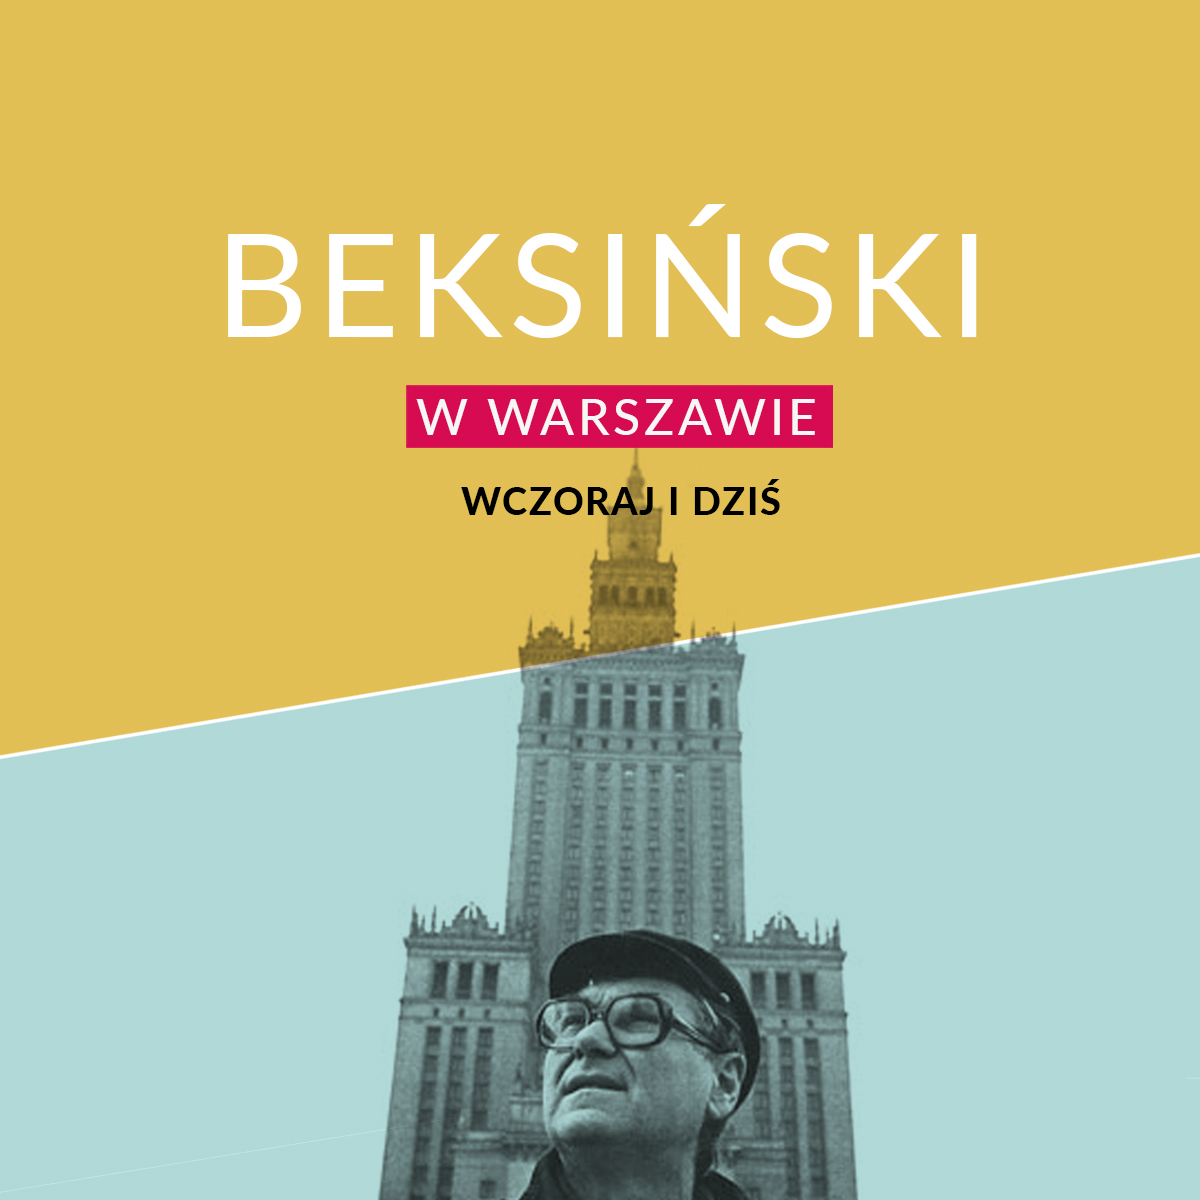 Beksiński w Warszawie - wczoraj i dziś #Beksinski